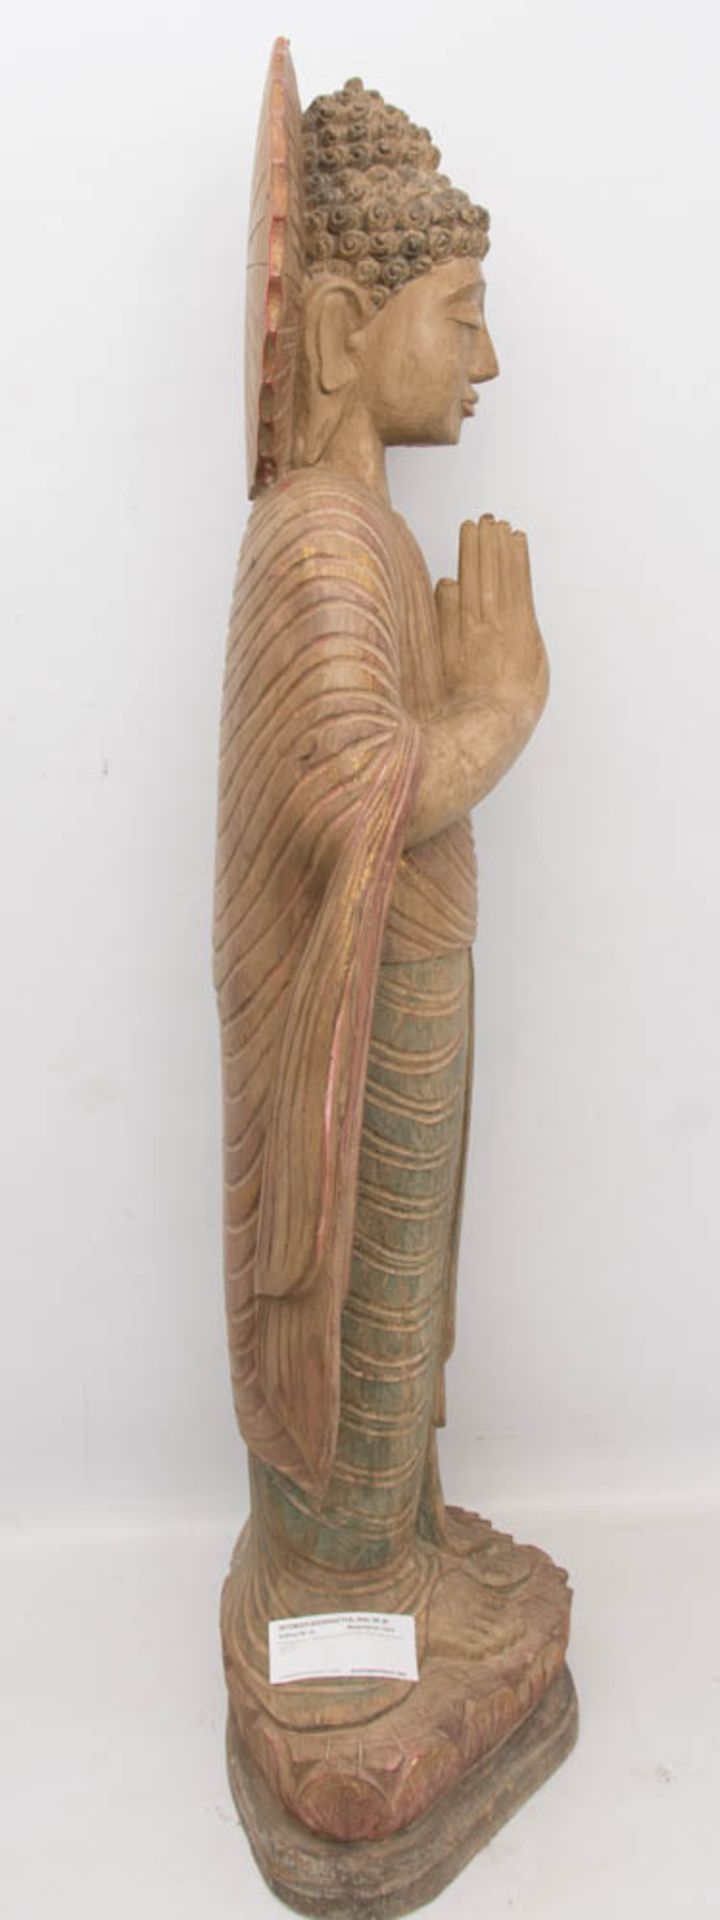 THAILÄNDISCHE BUDDHA STATUE, Holz, 20. Jh.Betende Skulptur in sehr gutem Zustand auf Sockel stehend. - Image 3 of 6